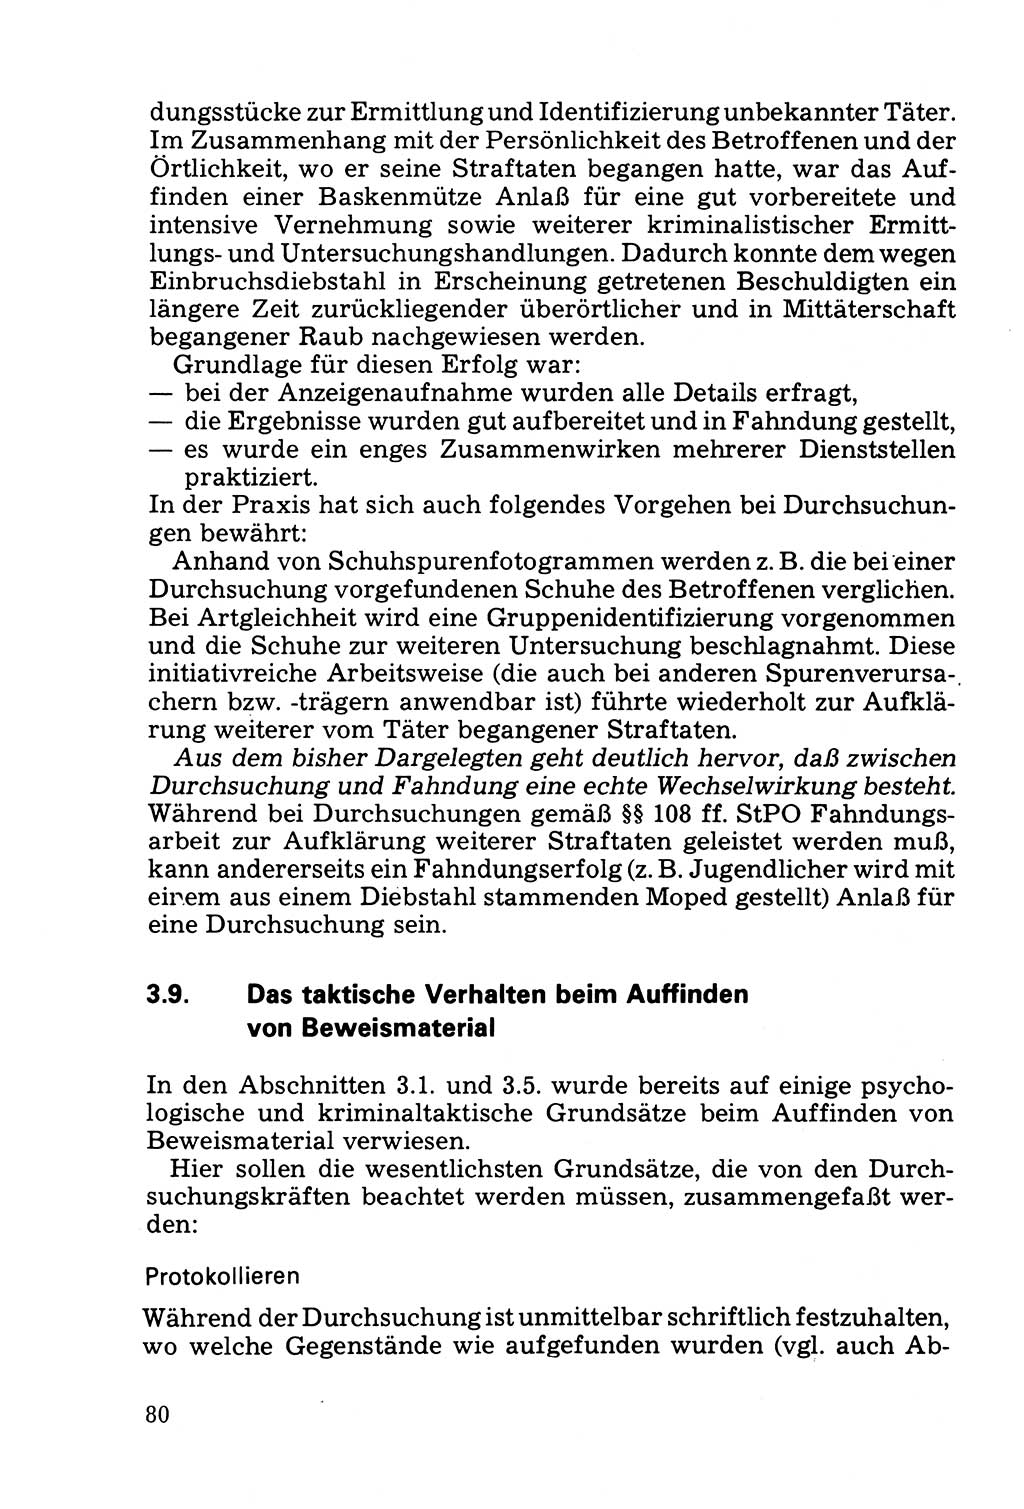 Die Durchsuchung und die Beschlagnahme [Deutsche Demokratische Republik (DDR)] 1979, Seite 80 (Durchs. Beschl. DDR 1979, S. 80)